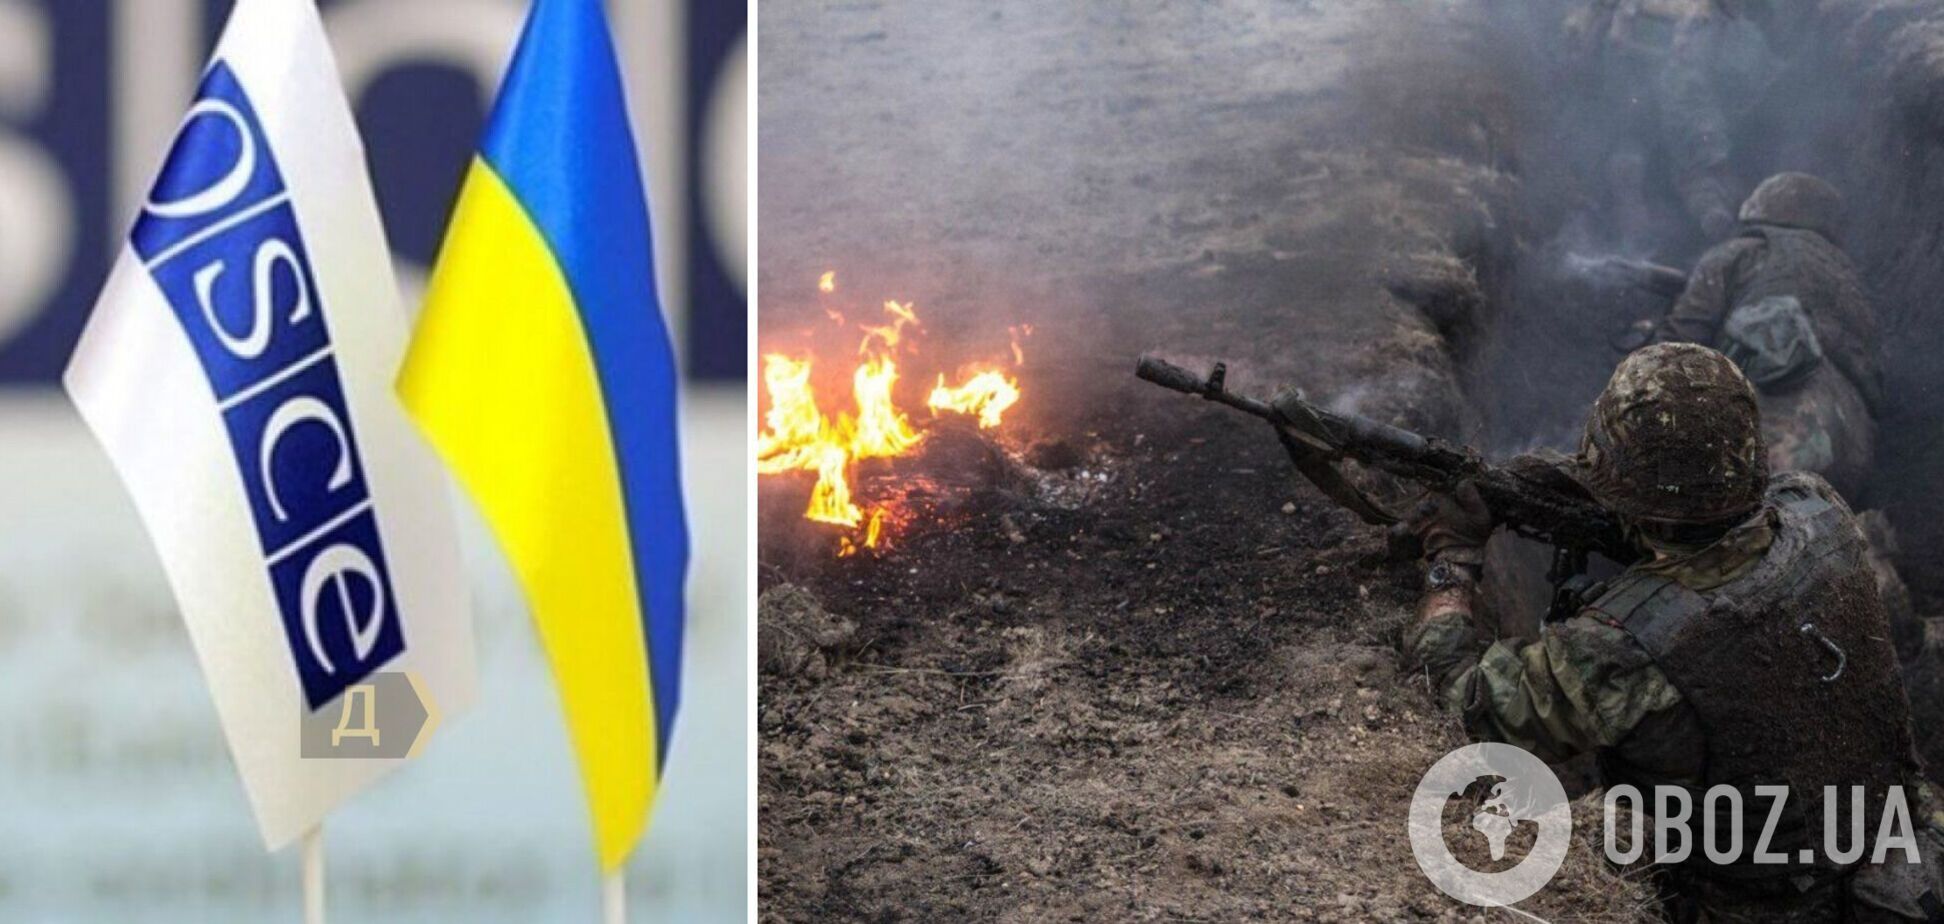 Українська делегація вимагає скликати екстрене засідання ТКГ через загострення на Донбасі